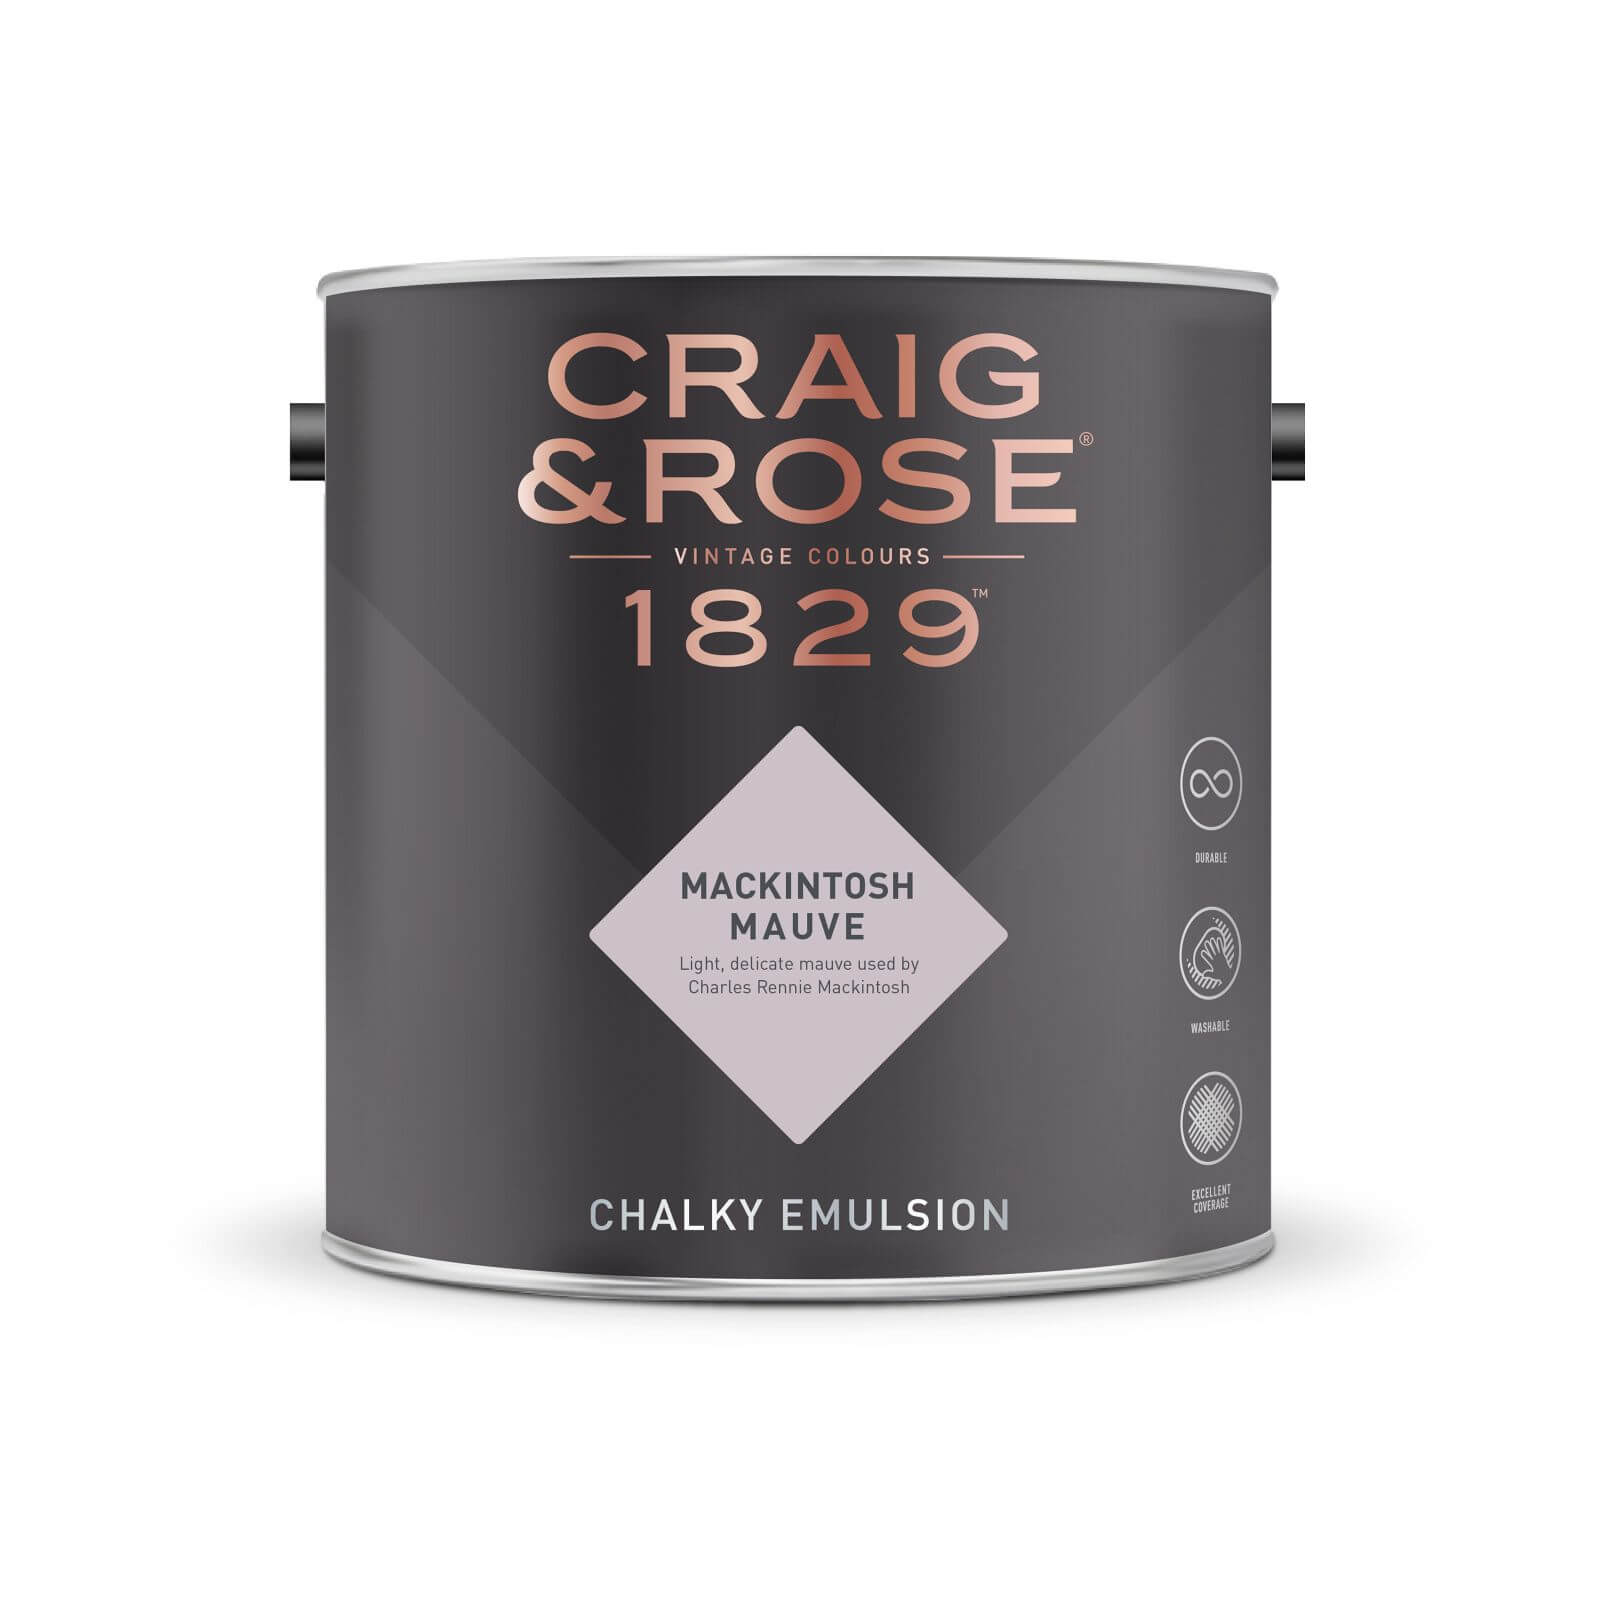 Craig & Rose 1829 Chalky Emulsion Paint Mackintosh Mauve - 2.5L